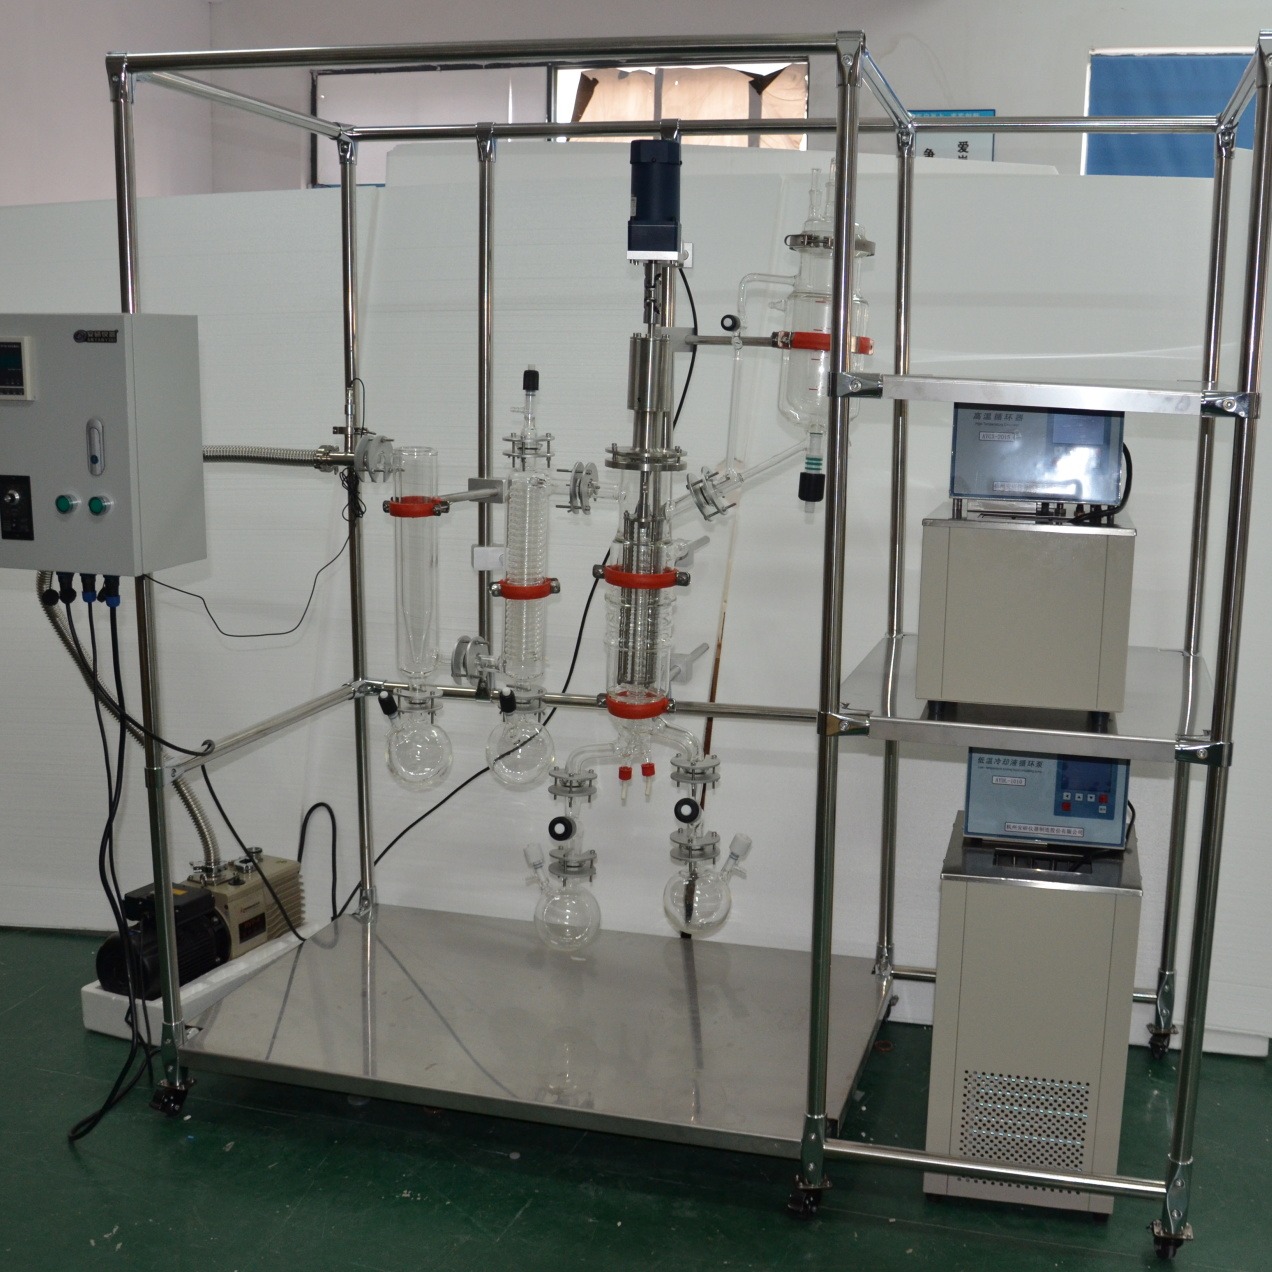 短分子蒸馏装置 玻璃液膜蒸发器  固定刮板薄膜蒸发器  AYAN-F80 杭州安研 源头厂家 支持贴牌